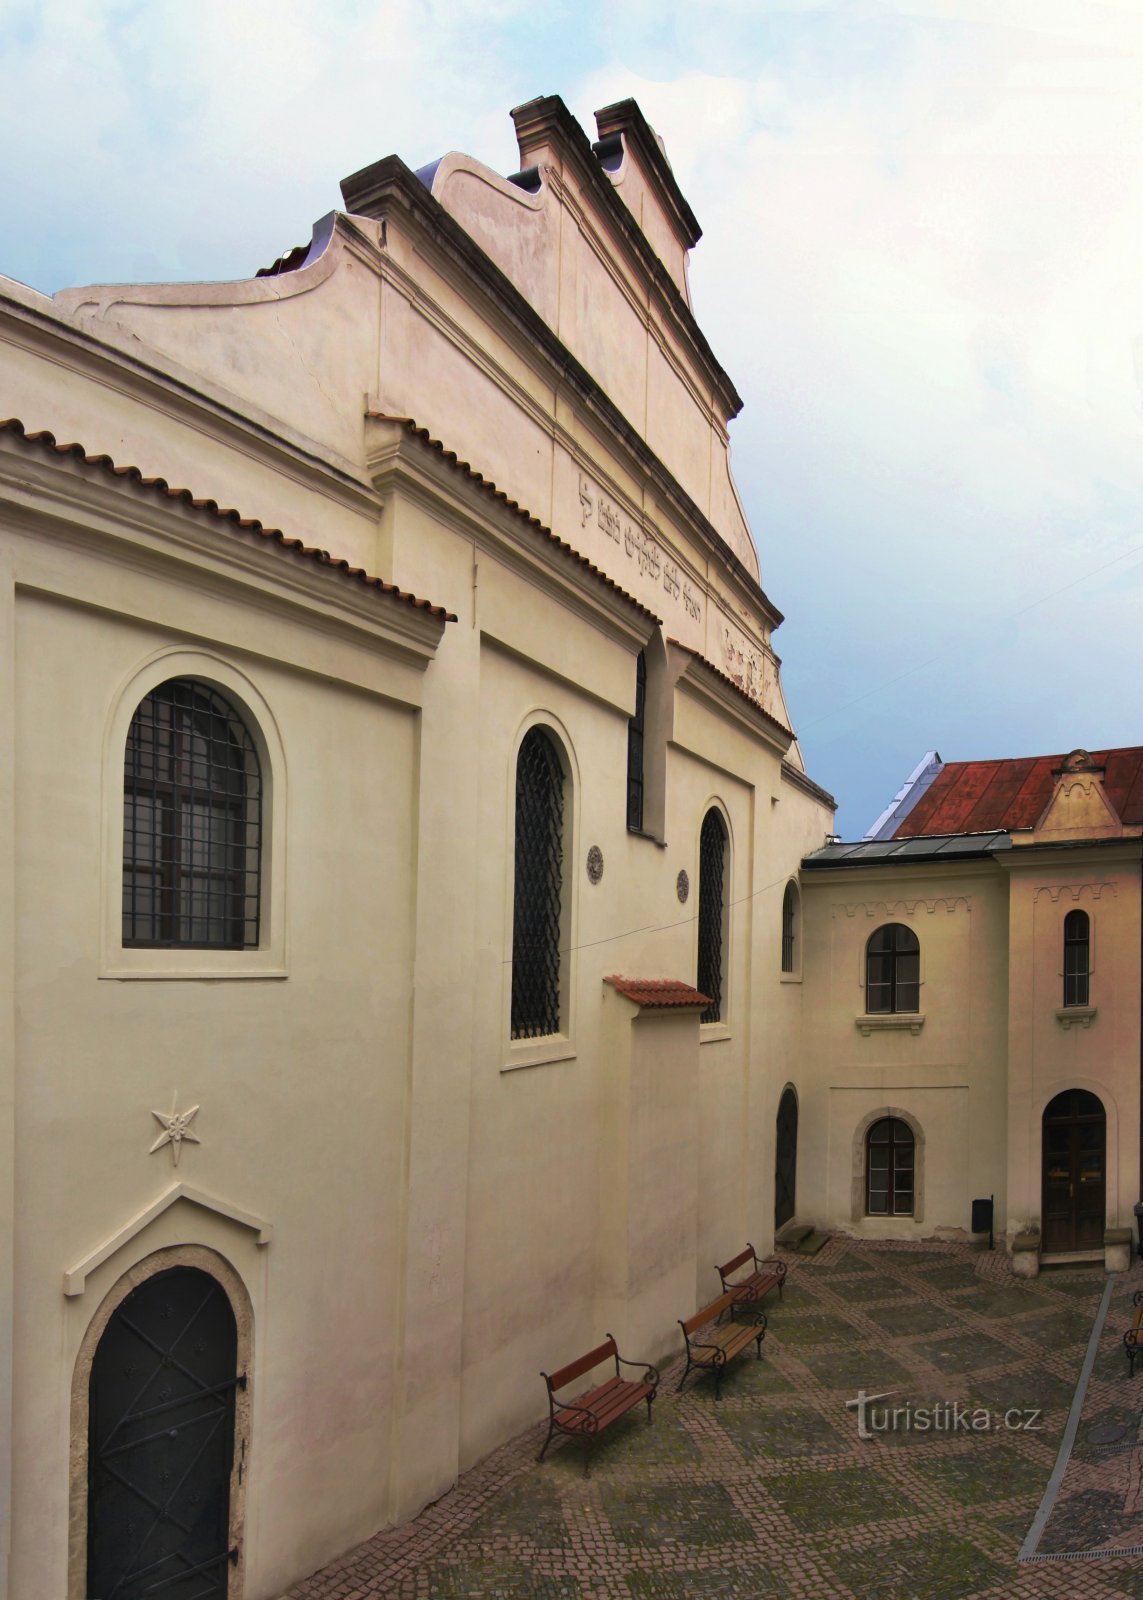 Ιερουσαλήμ στον Έλβα - Συναγωγή της Κολωνίας και εβραϊκά νεκροταφεία